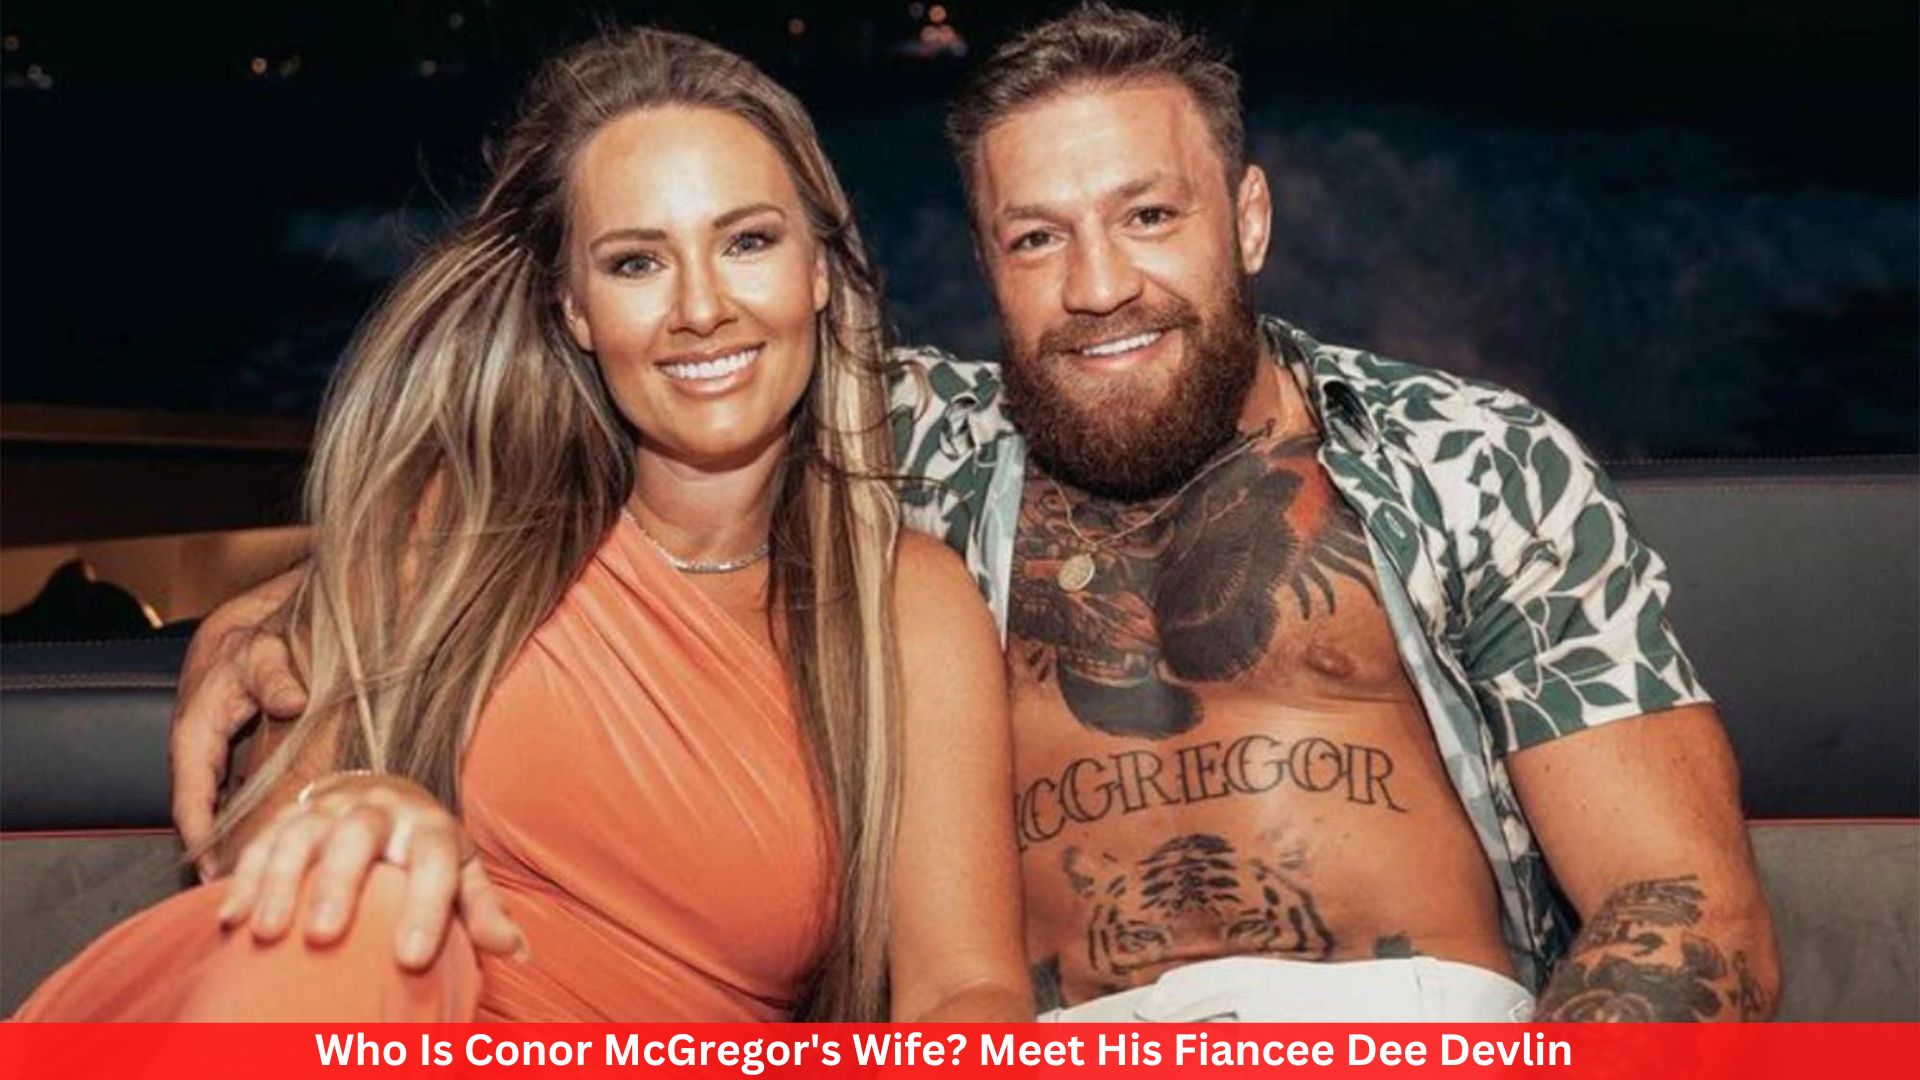 Who Is Conor McGregor's Wife? Meet His Fiancee Dee Devlin